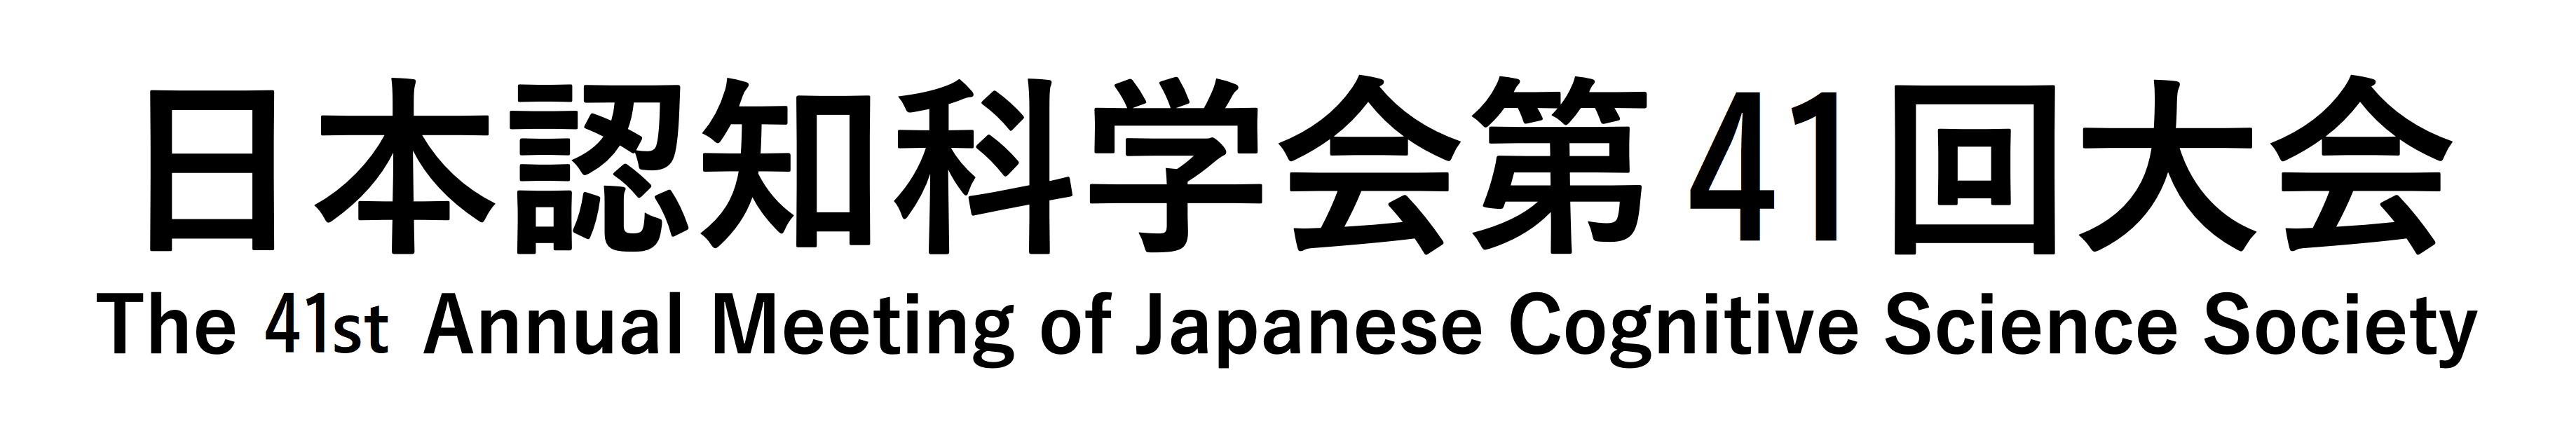 日本認知科学会第41回大会